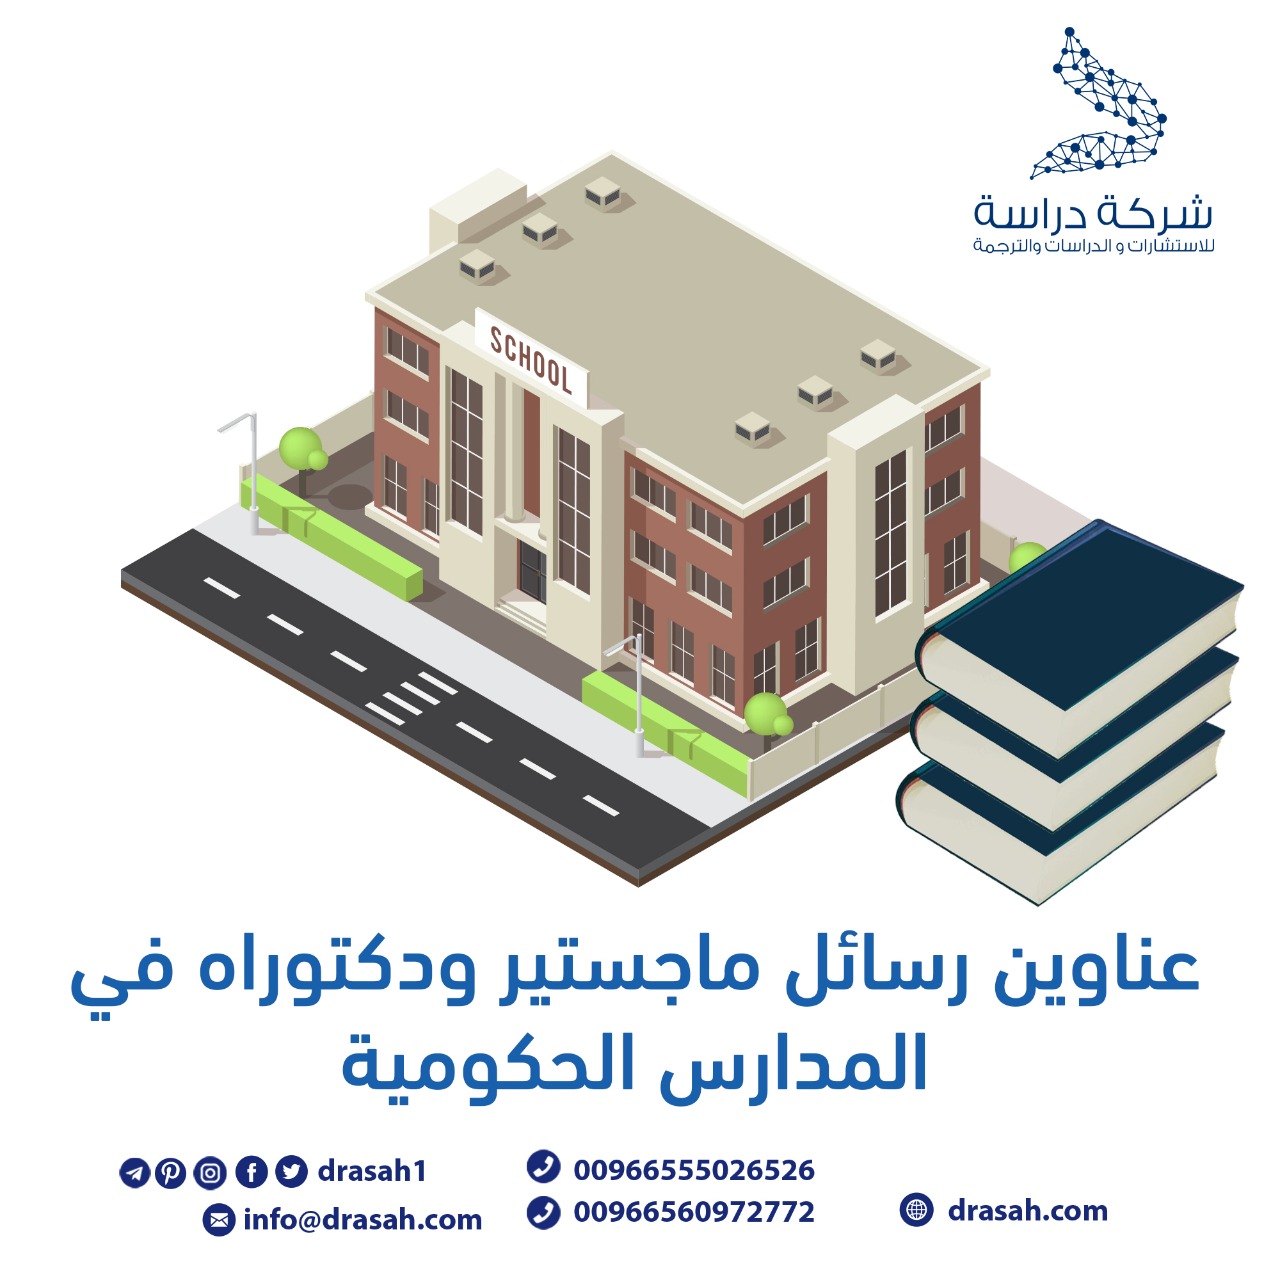 مدى رضا أعضاء مركز التطوير الأكاديمي بجامعة صنعاء عن تحقق مؤشرات الأداء الأكاديمي على مستوى المركز